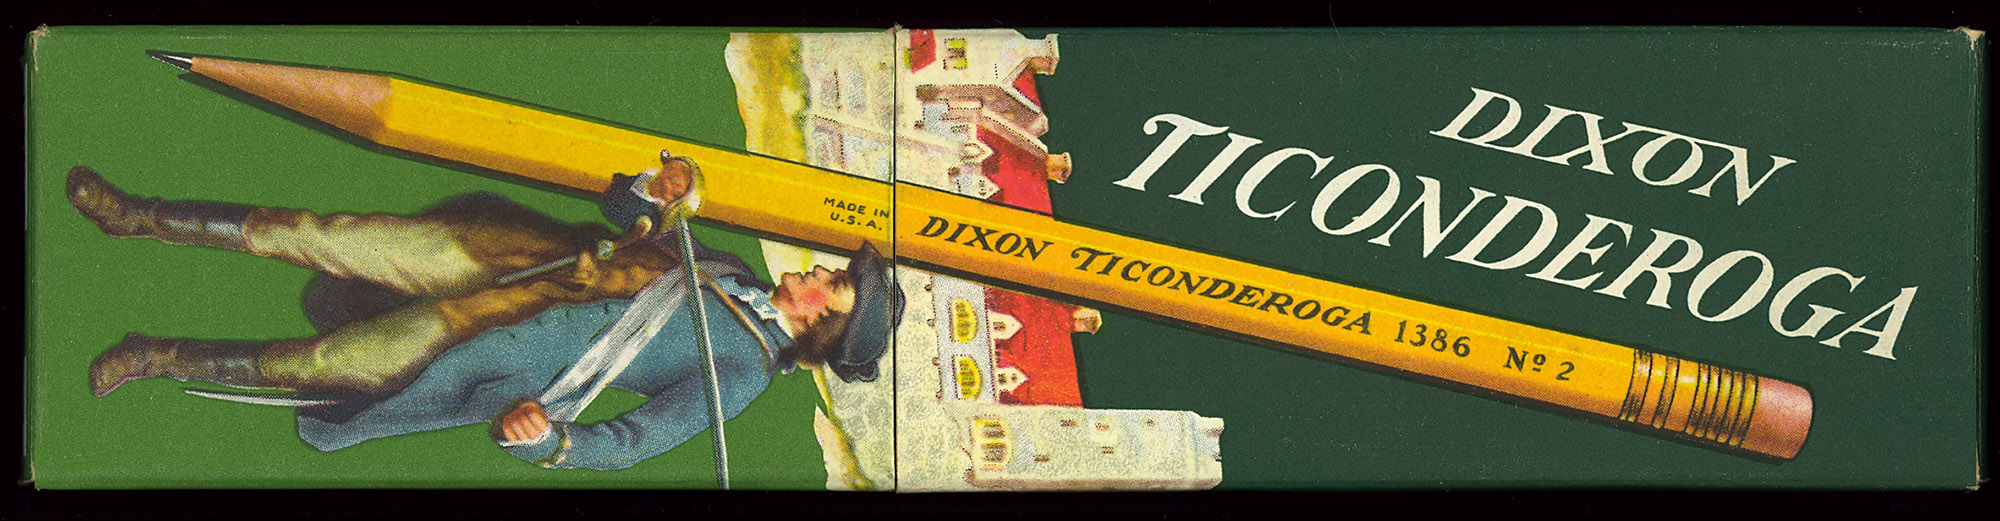 Ticonderoga No. 2 Pencil